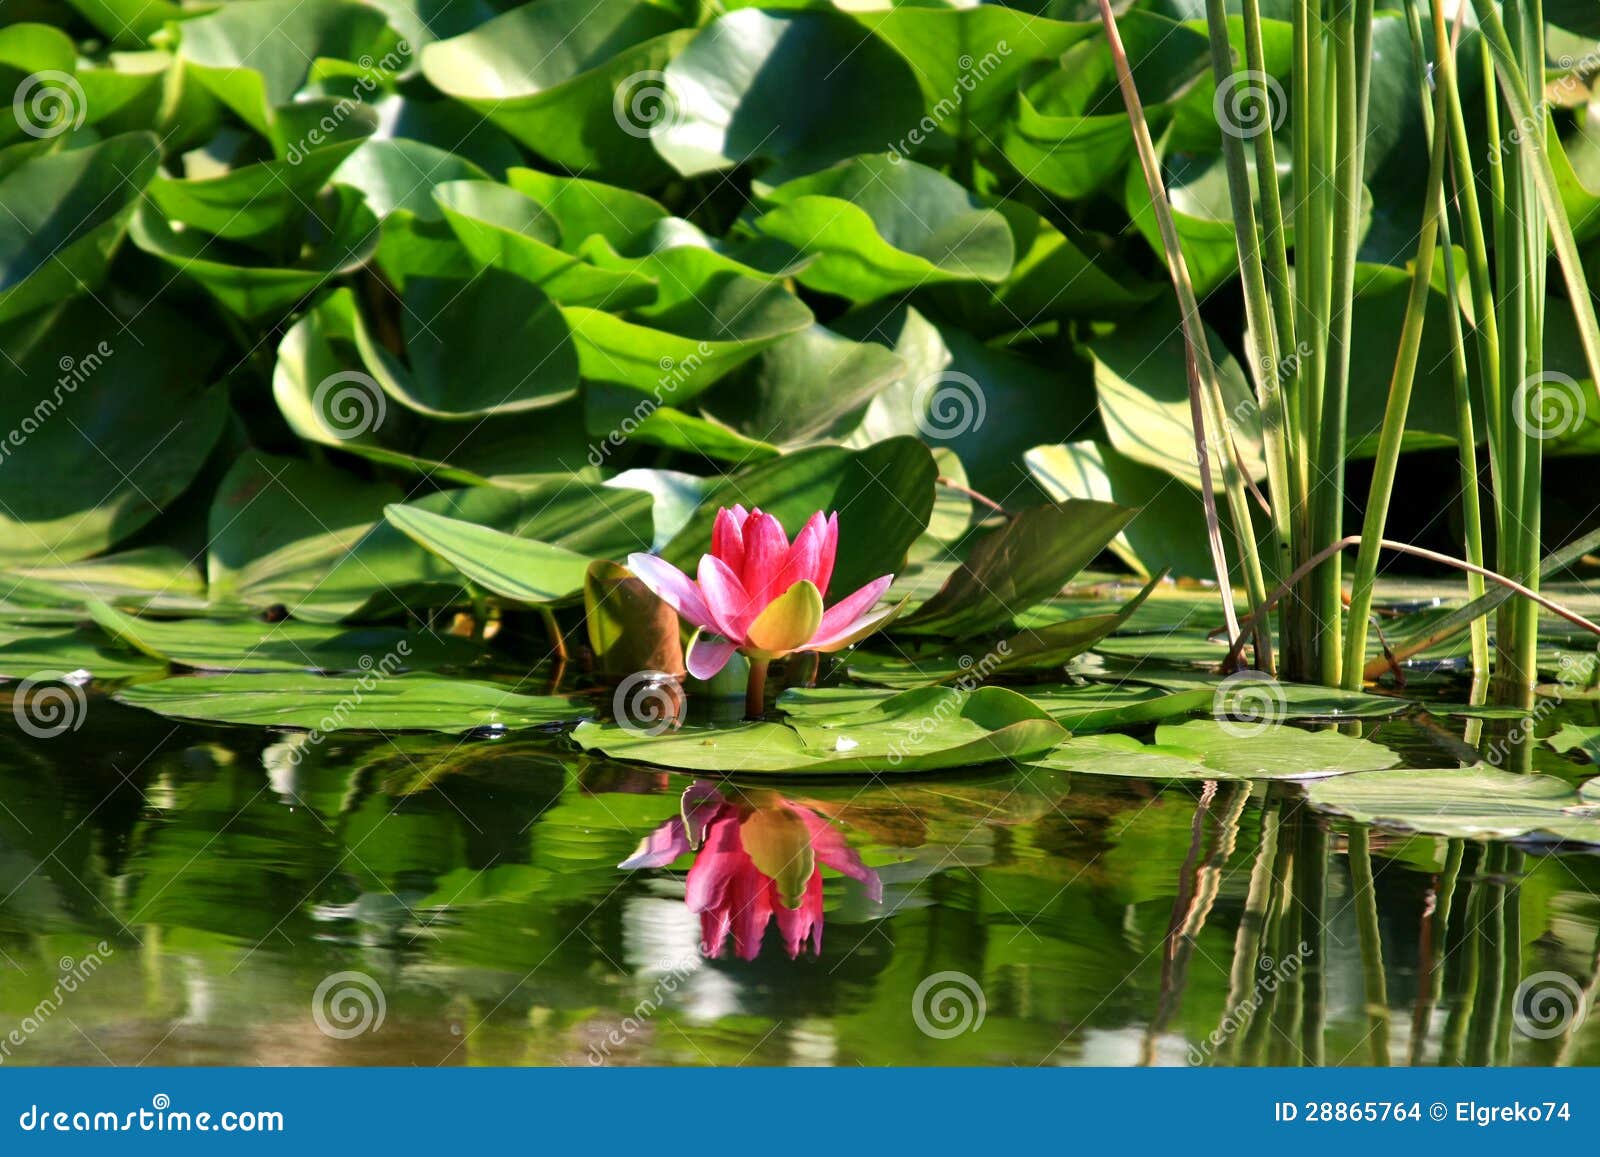 Fleur de lotus dans l'eau